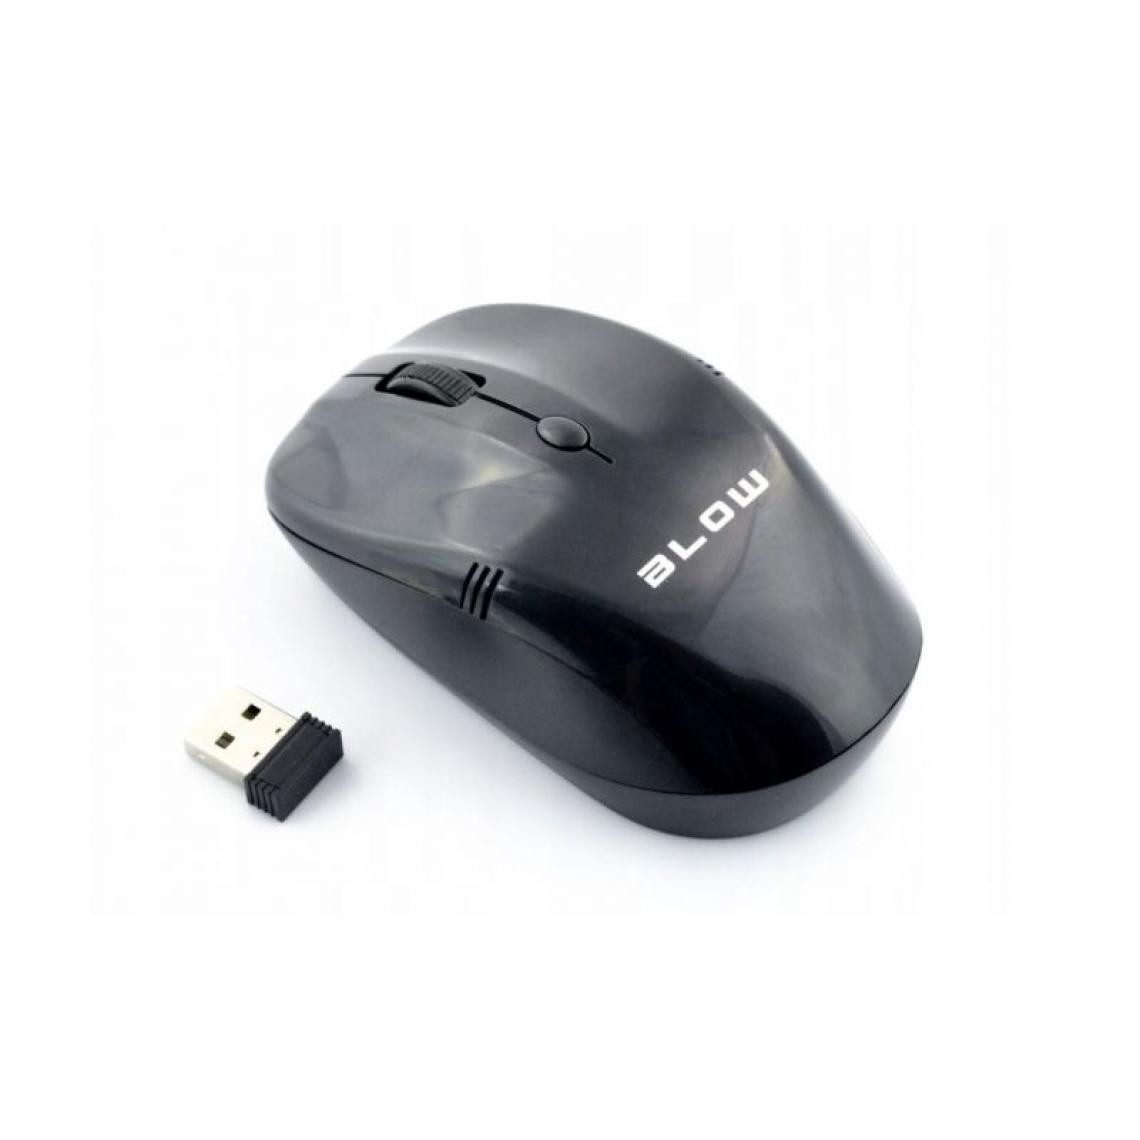 marque generique - Wireless optical mouse BLOW MB-10 black - Souris